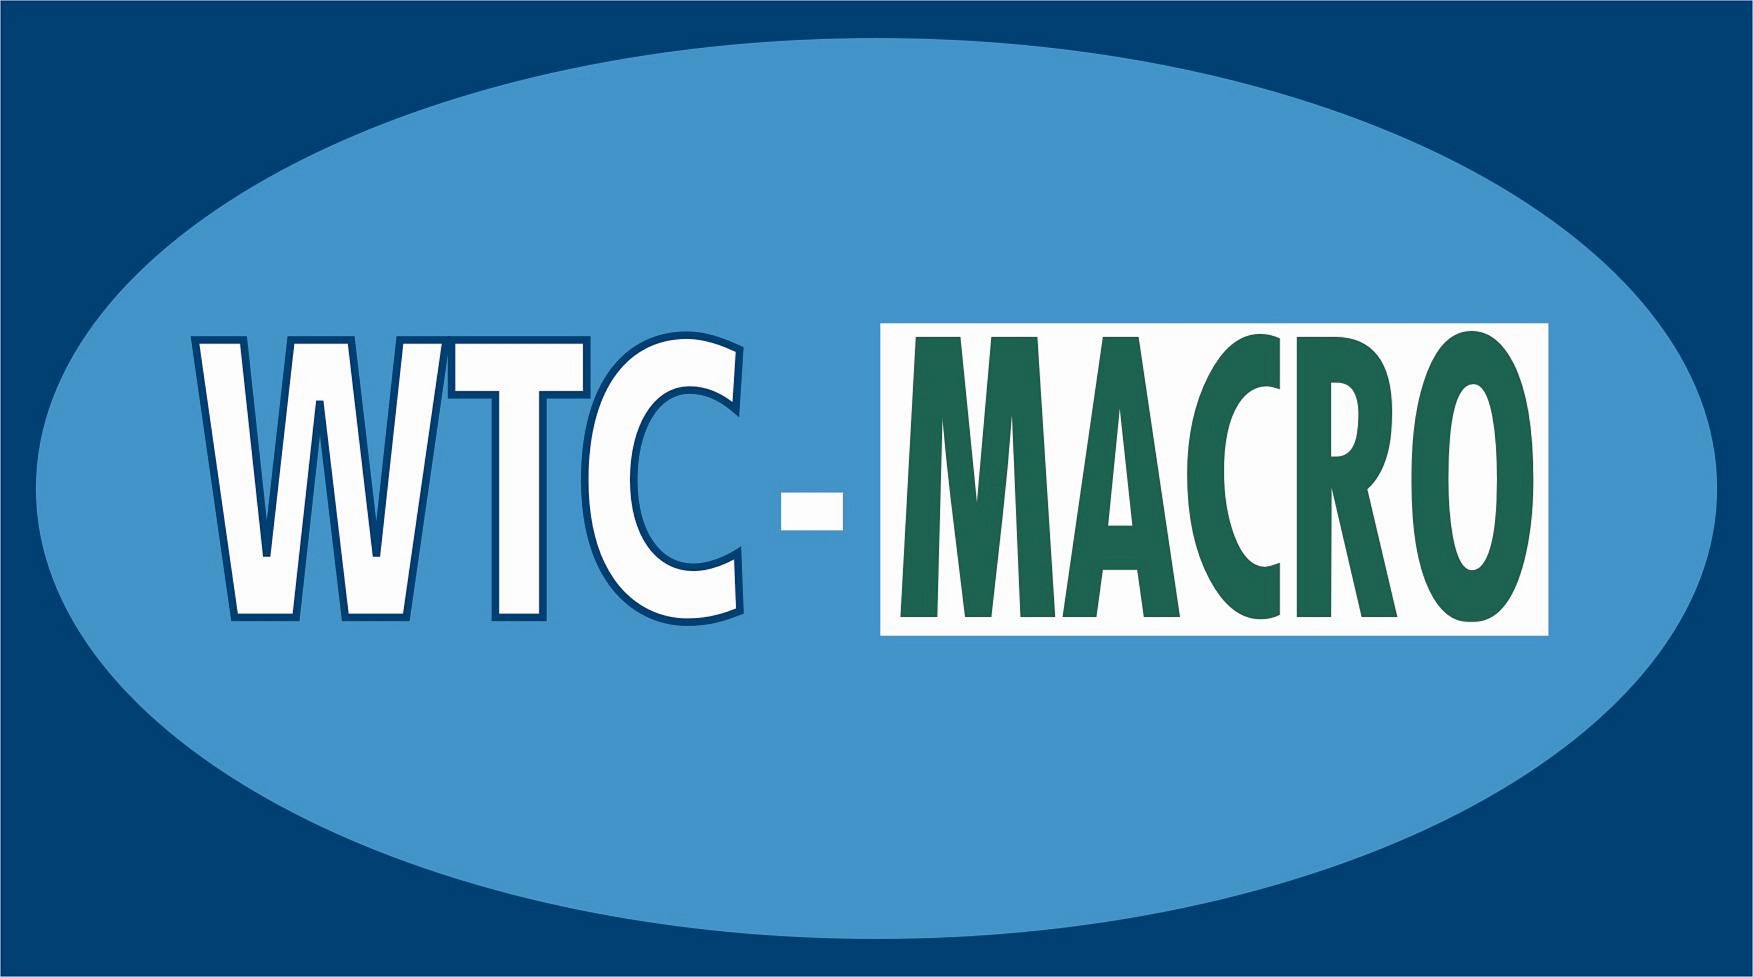 WTC-MACRO logo